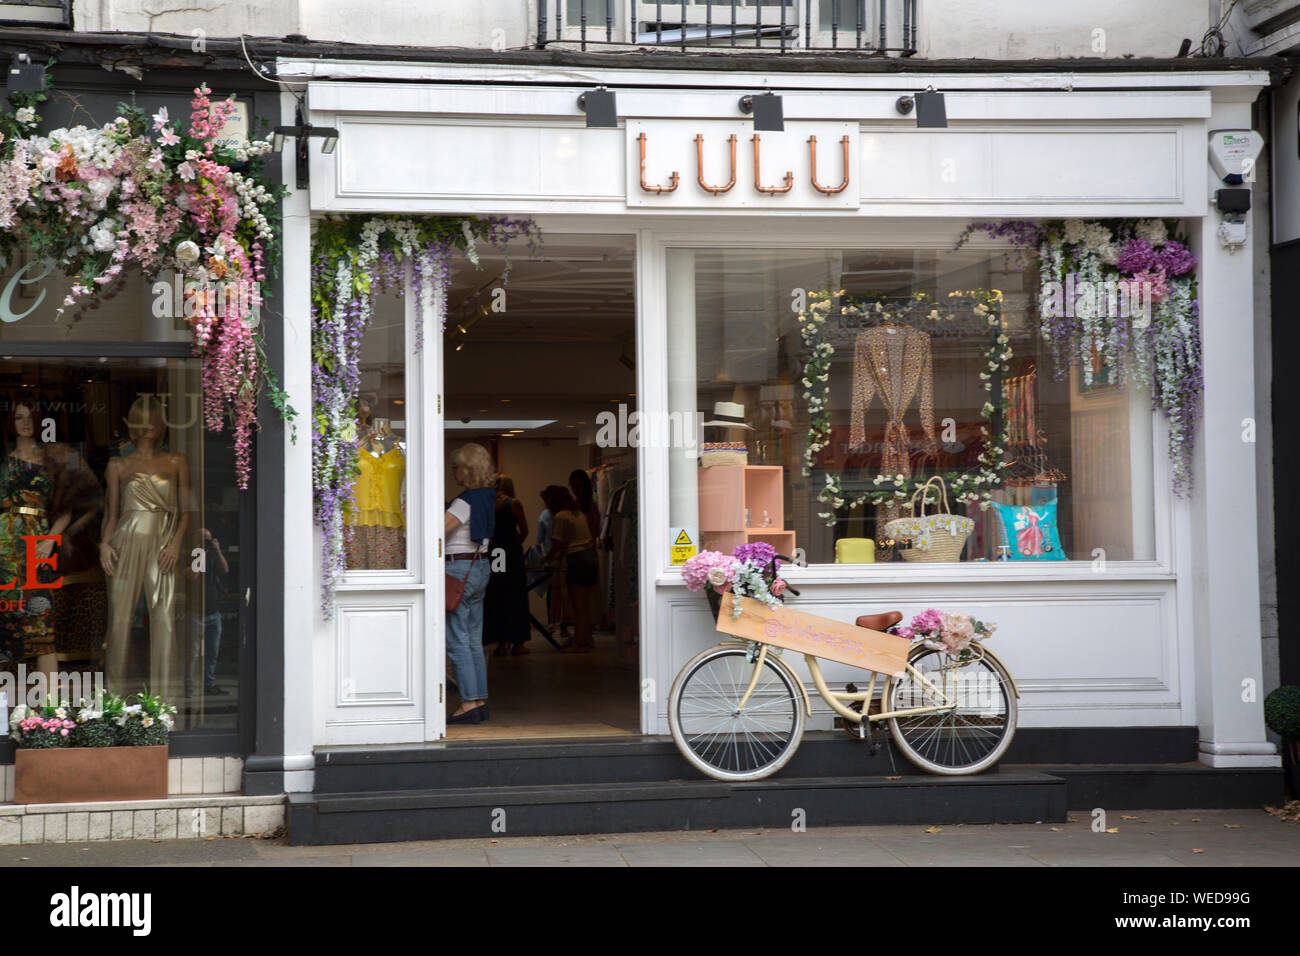 Lulu Shop; Kings Road; Chelsea; London; England; UK Stock Photo - Alamy